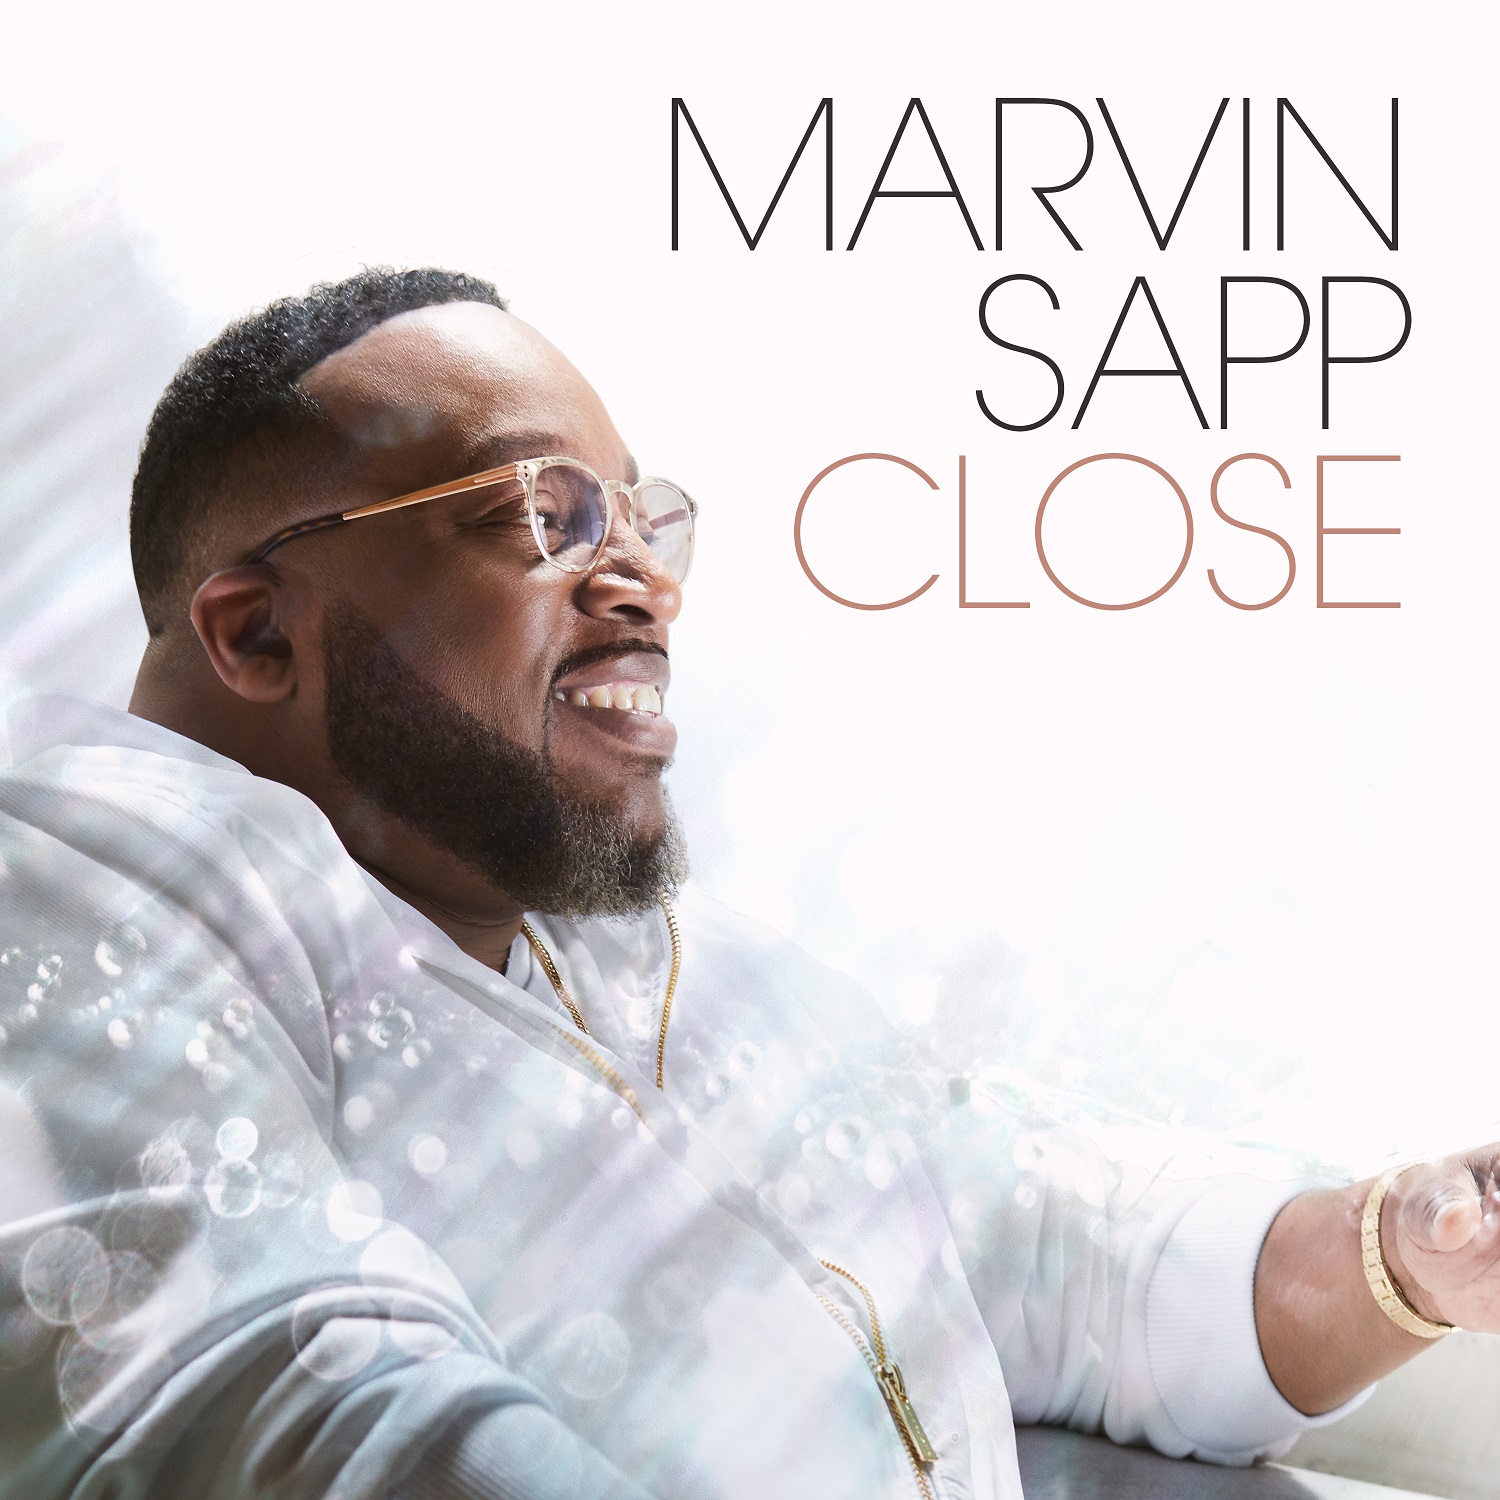 MarvinSapp Close Album Cover